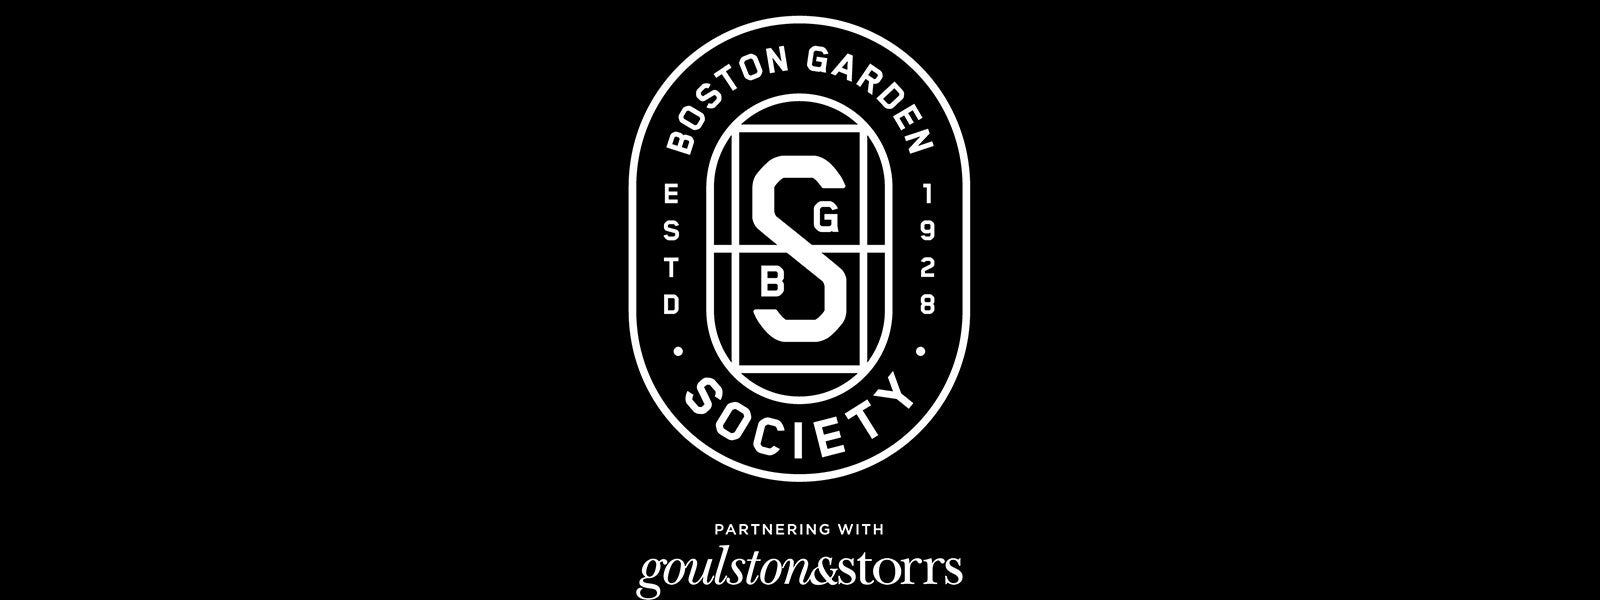 Contact Us Boston Garden Society Td Garden Td Garden